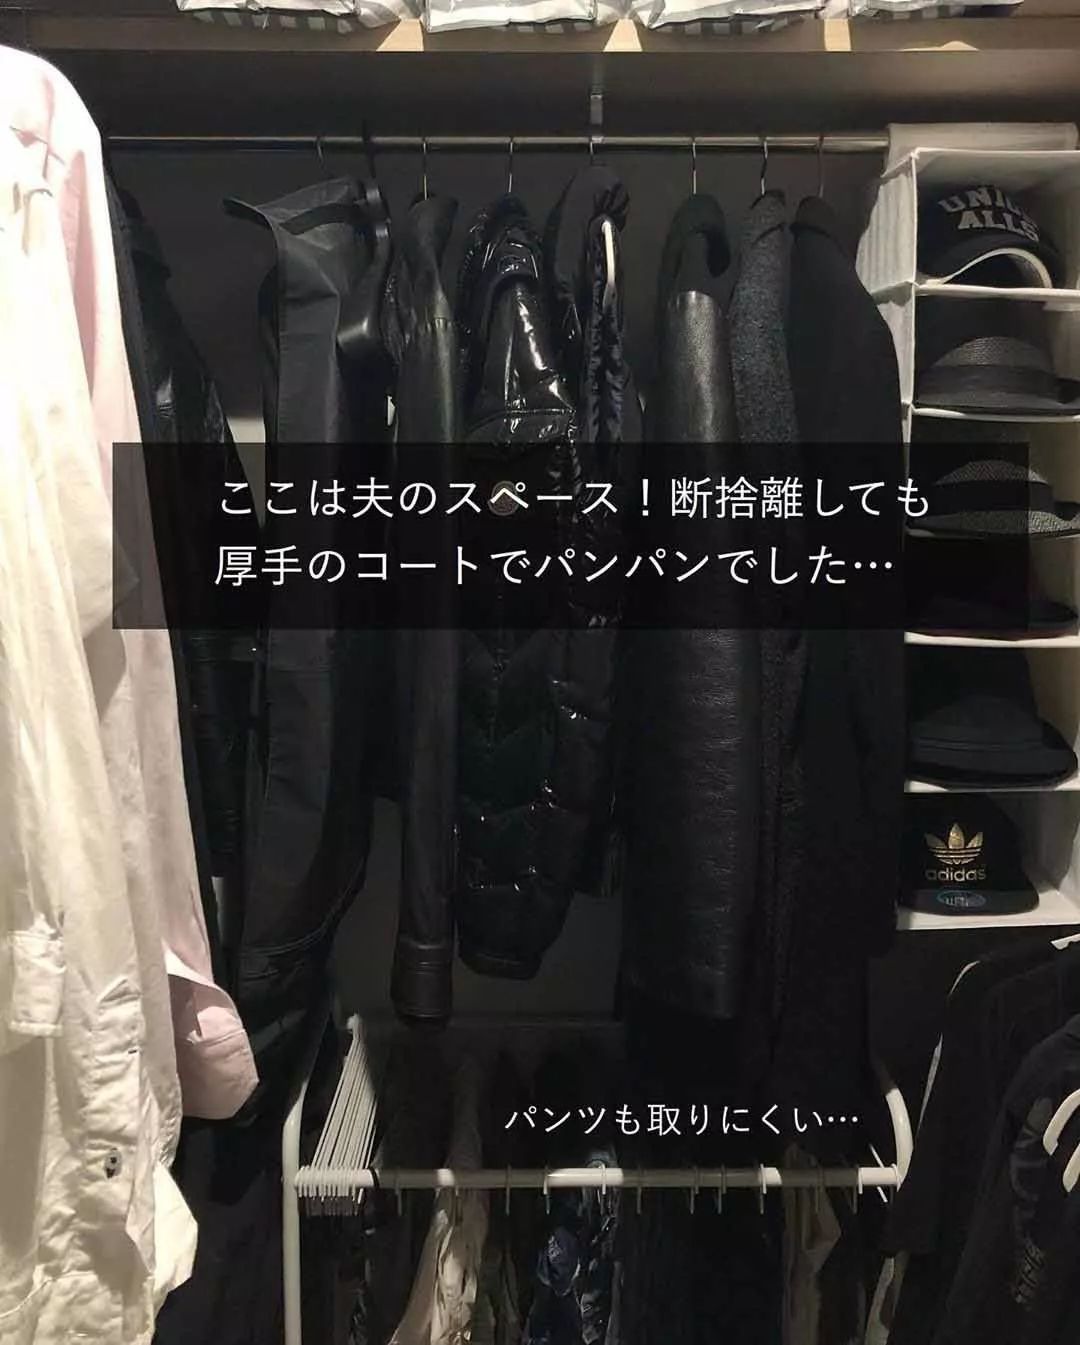 日本主妇1㎡衣柜极限收纳术，逼出十倍收纳力，妥妥塞进80件衣服也没问题！